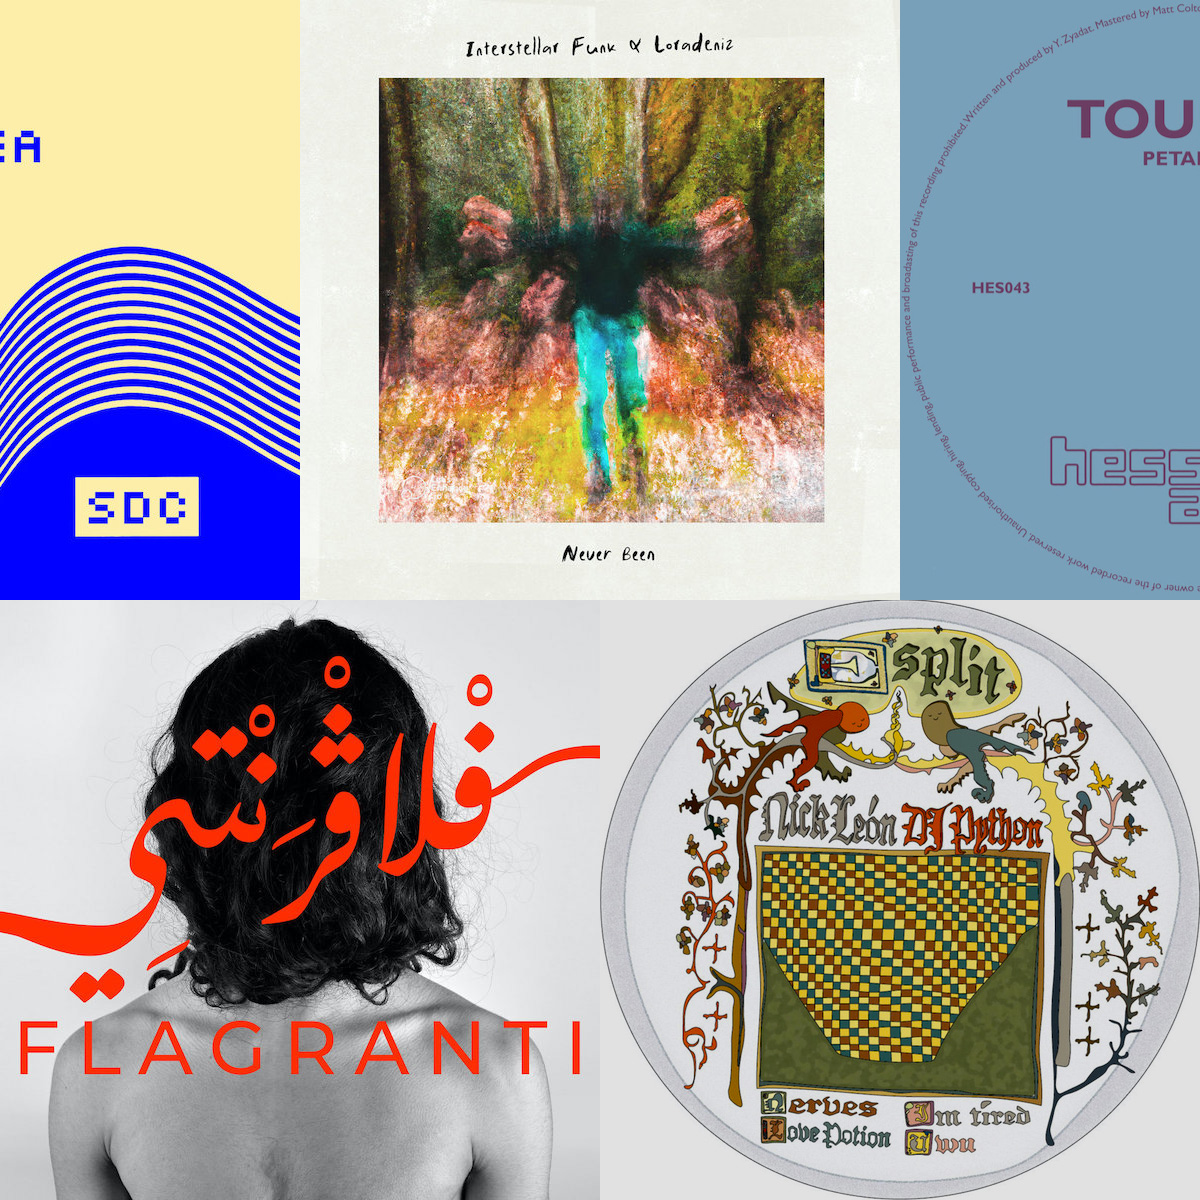 Die Platten der Woche mit Deena Abdelwahed, Interstellar Funk & Loradeniz, Nick Léon x DJ Python, Space Dimension Controller und Toumba